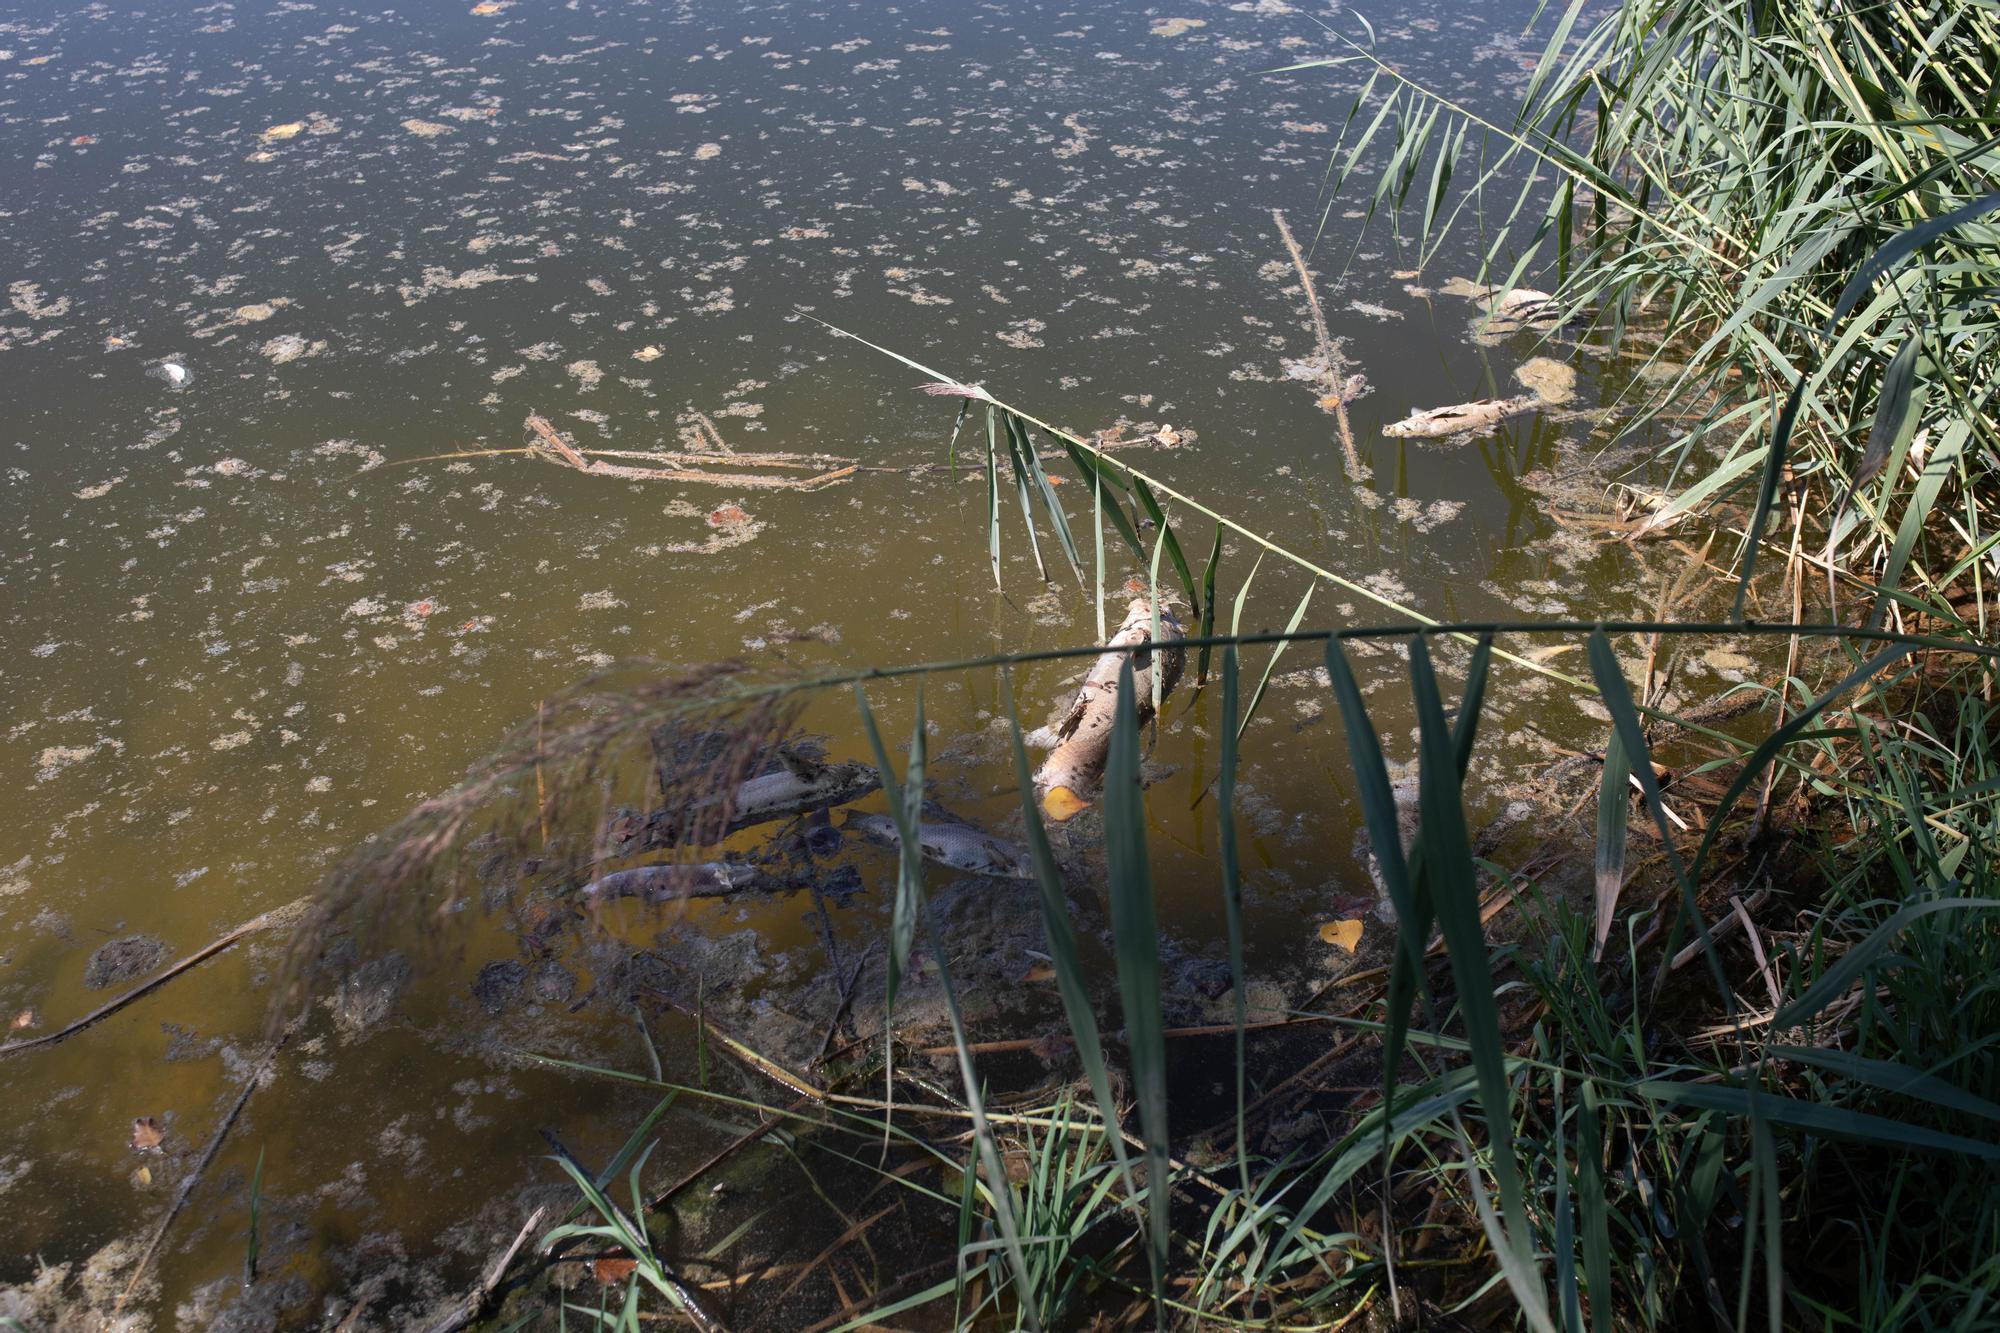 Peces muertos en el río Duero en Villaralbo